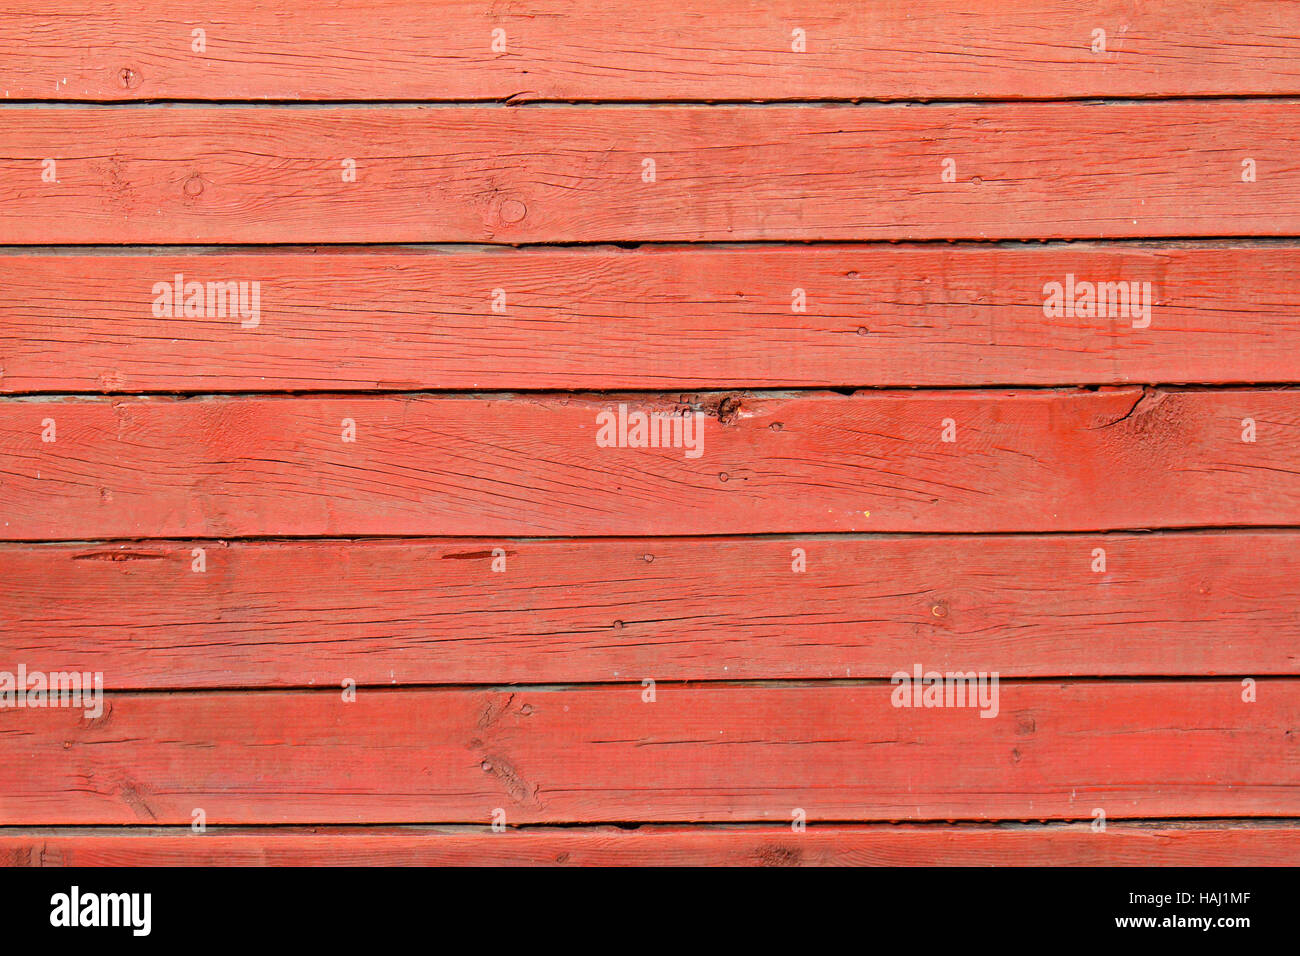 La texture des planches en bois rouge Banque D'Images